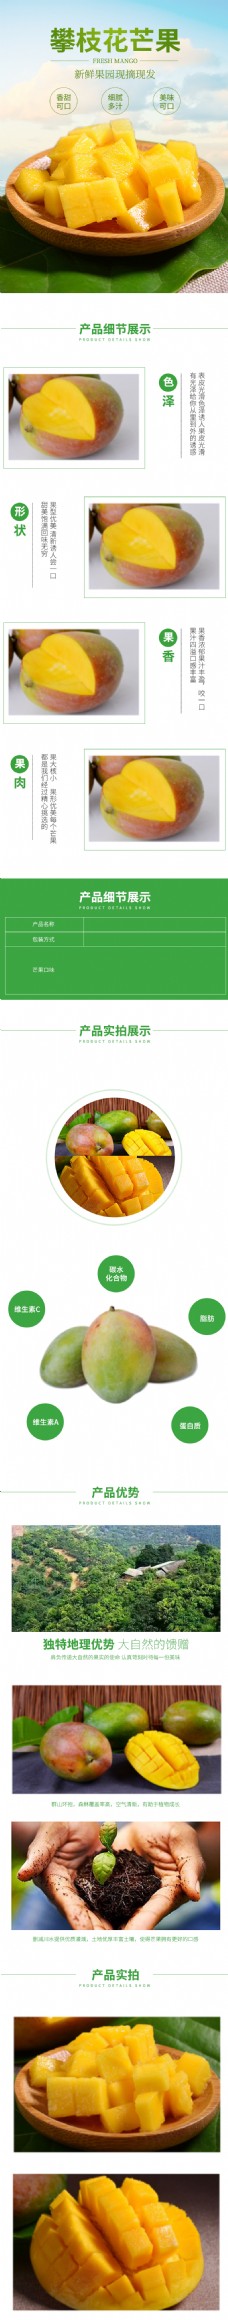 水果生鲜芒果新鲜蔬果电商淘宝详情页模板PSD